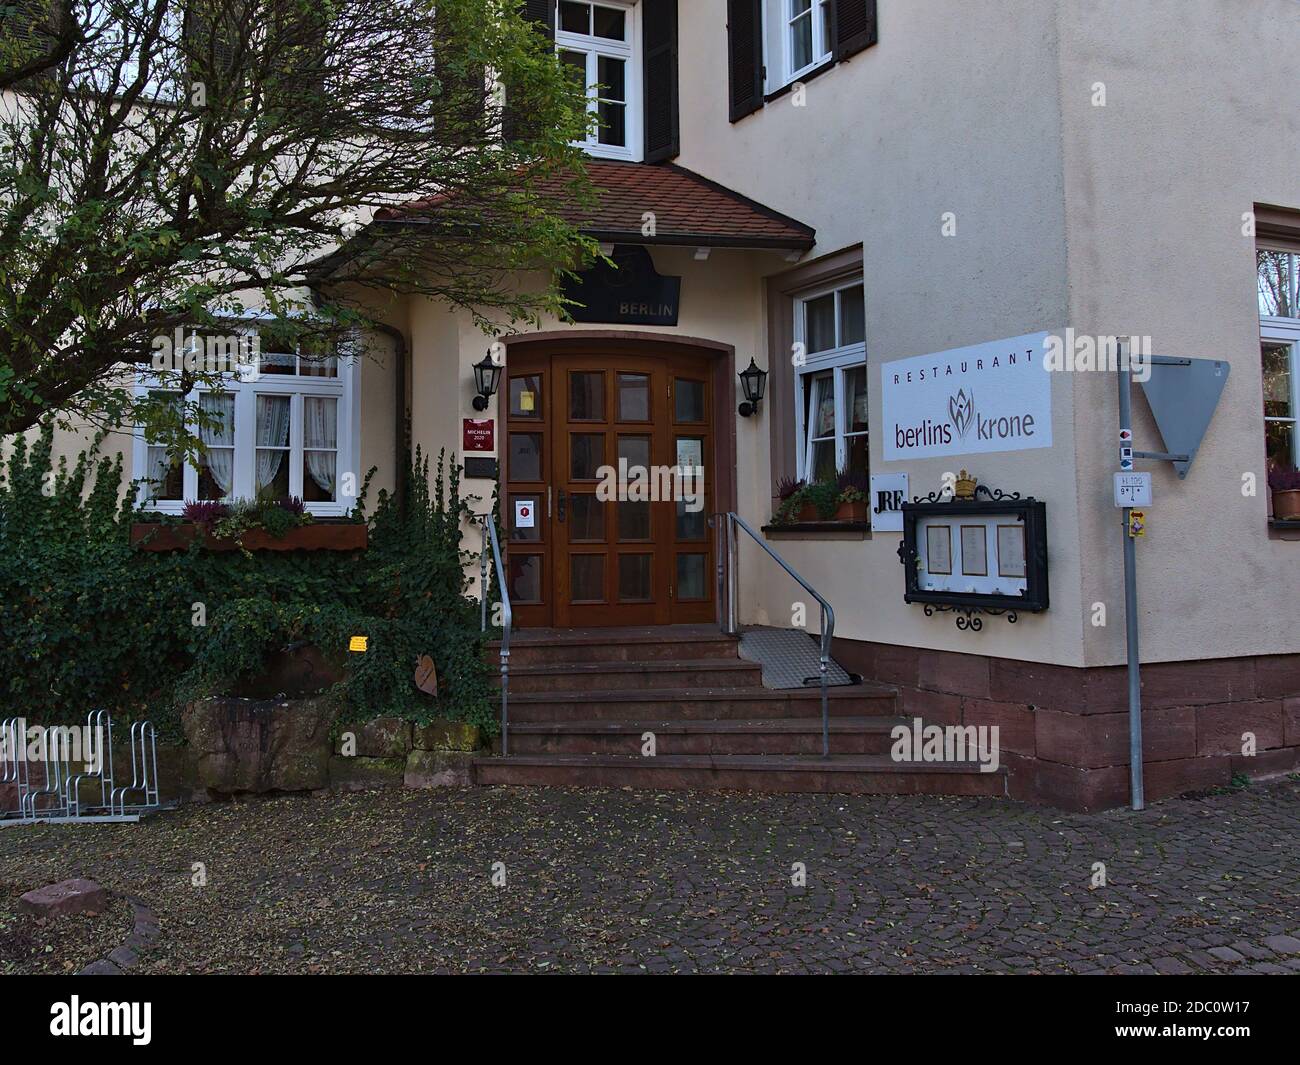 Bad Teinach-Zavelstein, Germania - 11/14/2020: Vista frontale dell'ingresso del ristorante gourmet Berlins Krone, elencato nella Guida Michelin 2020 (una stella). Foto Stock